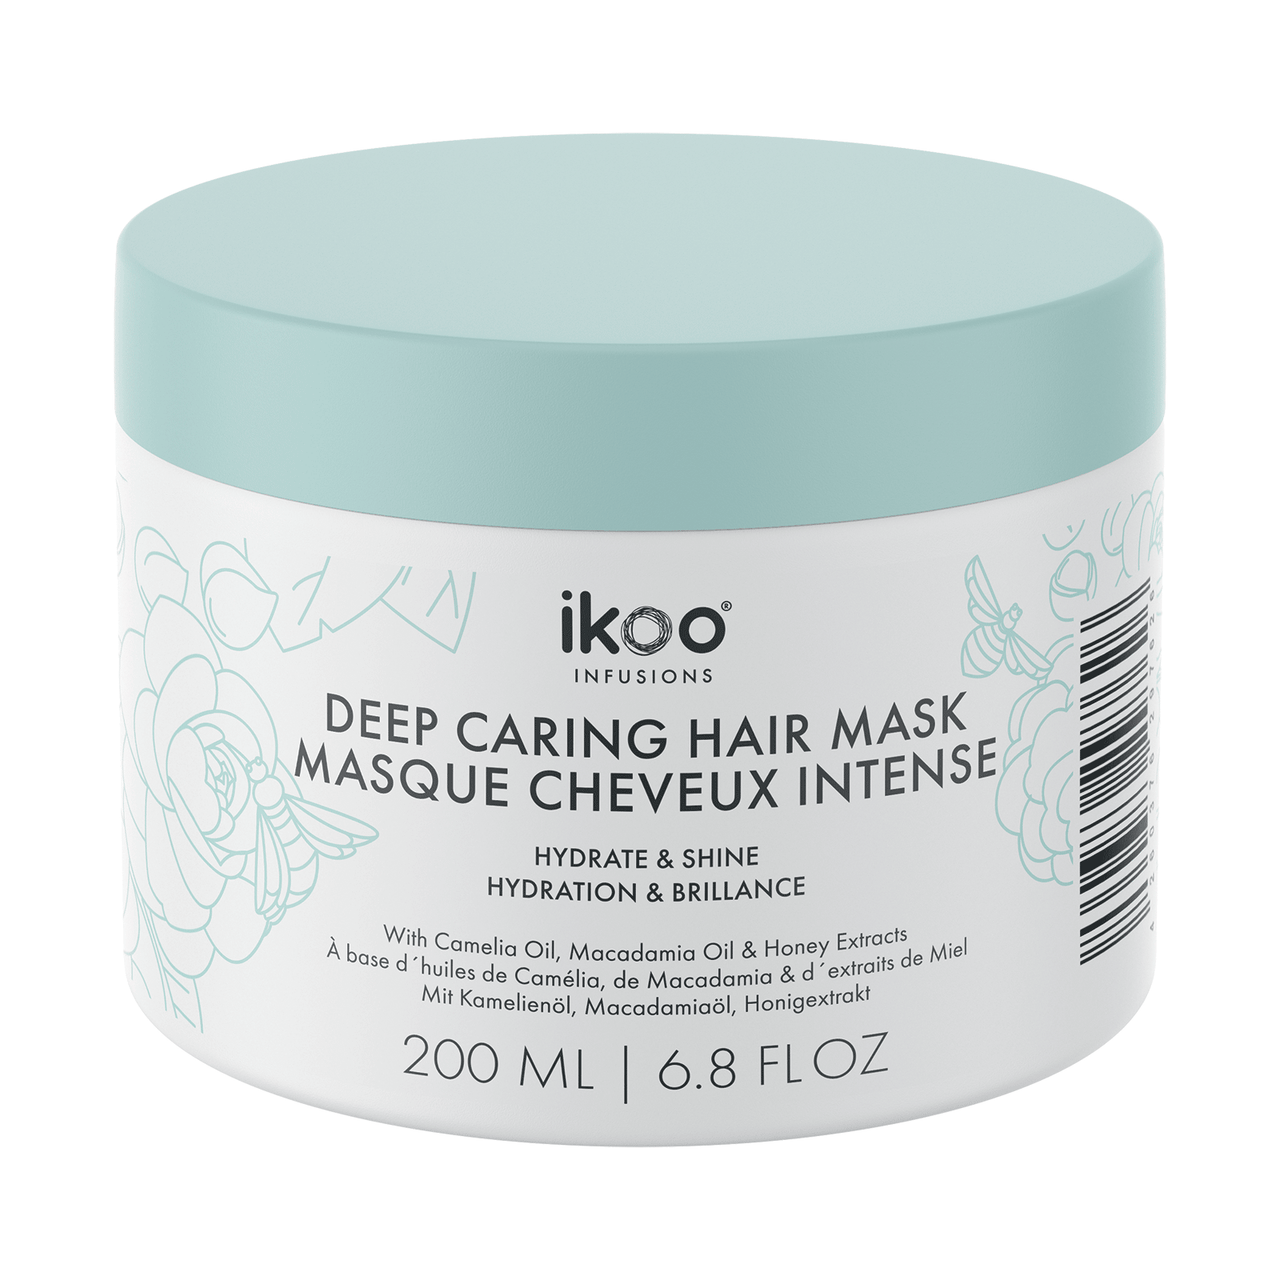 ikoo Deep Caring Hair Mask Hydrate & Shine 6.8 fl. oz.